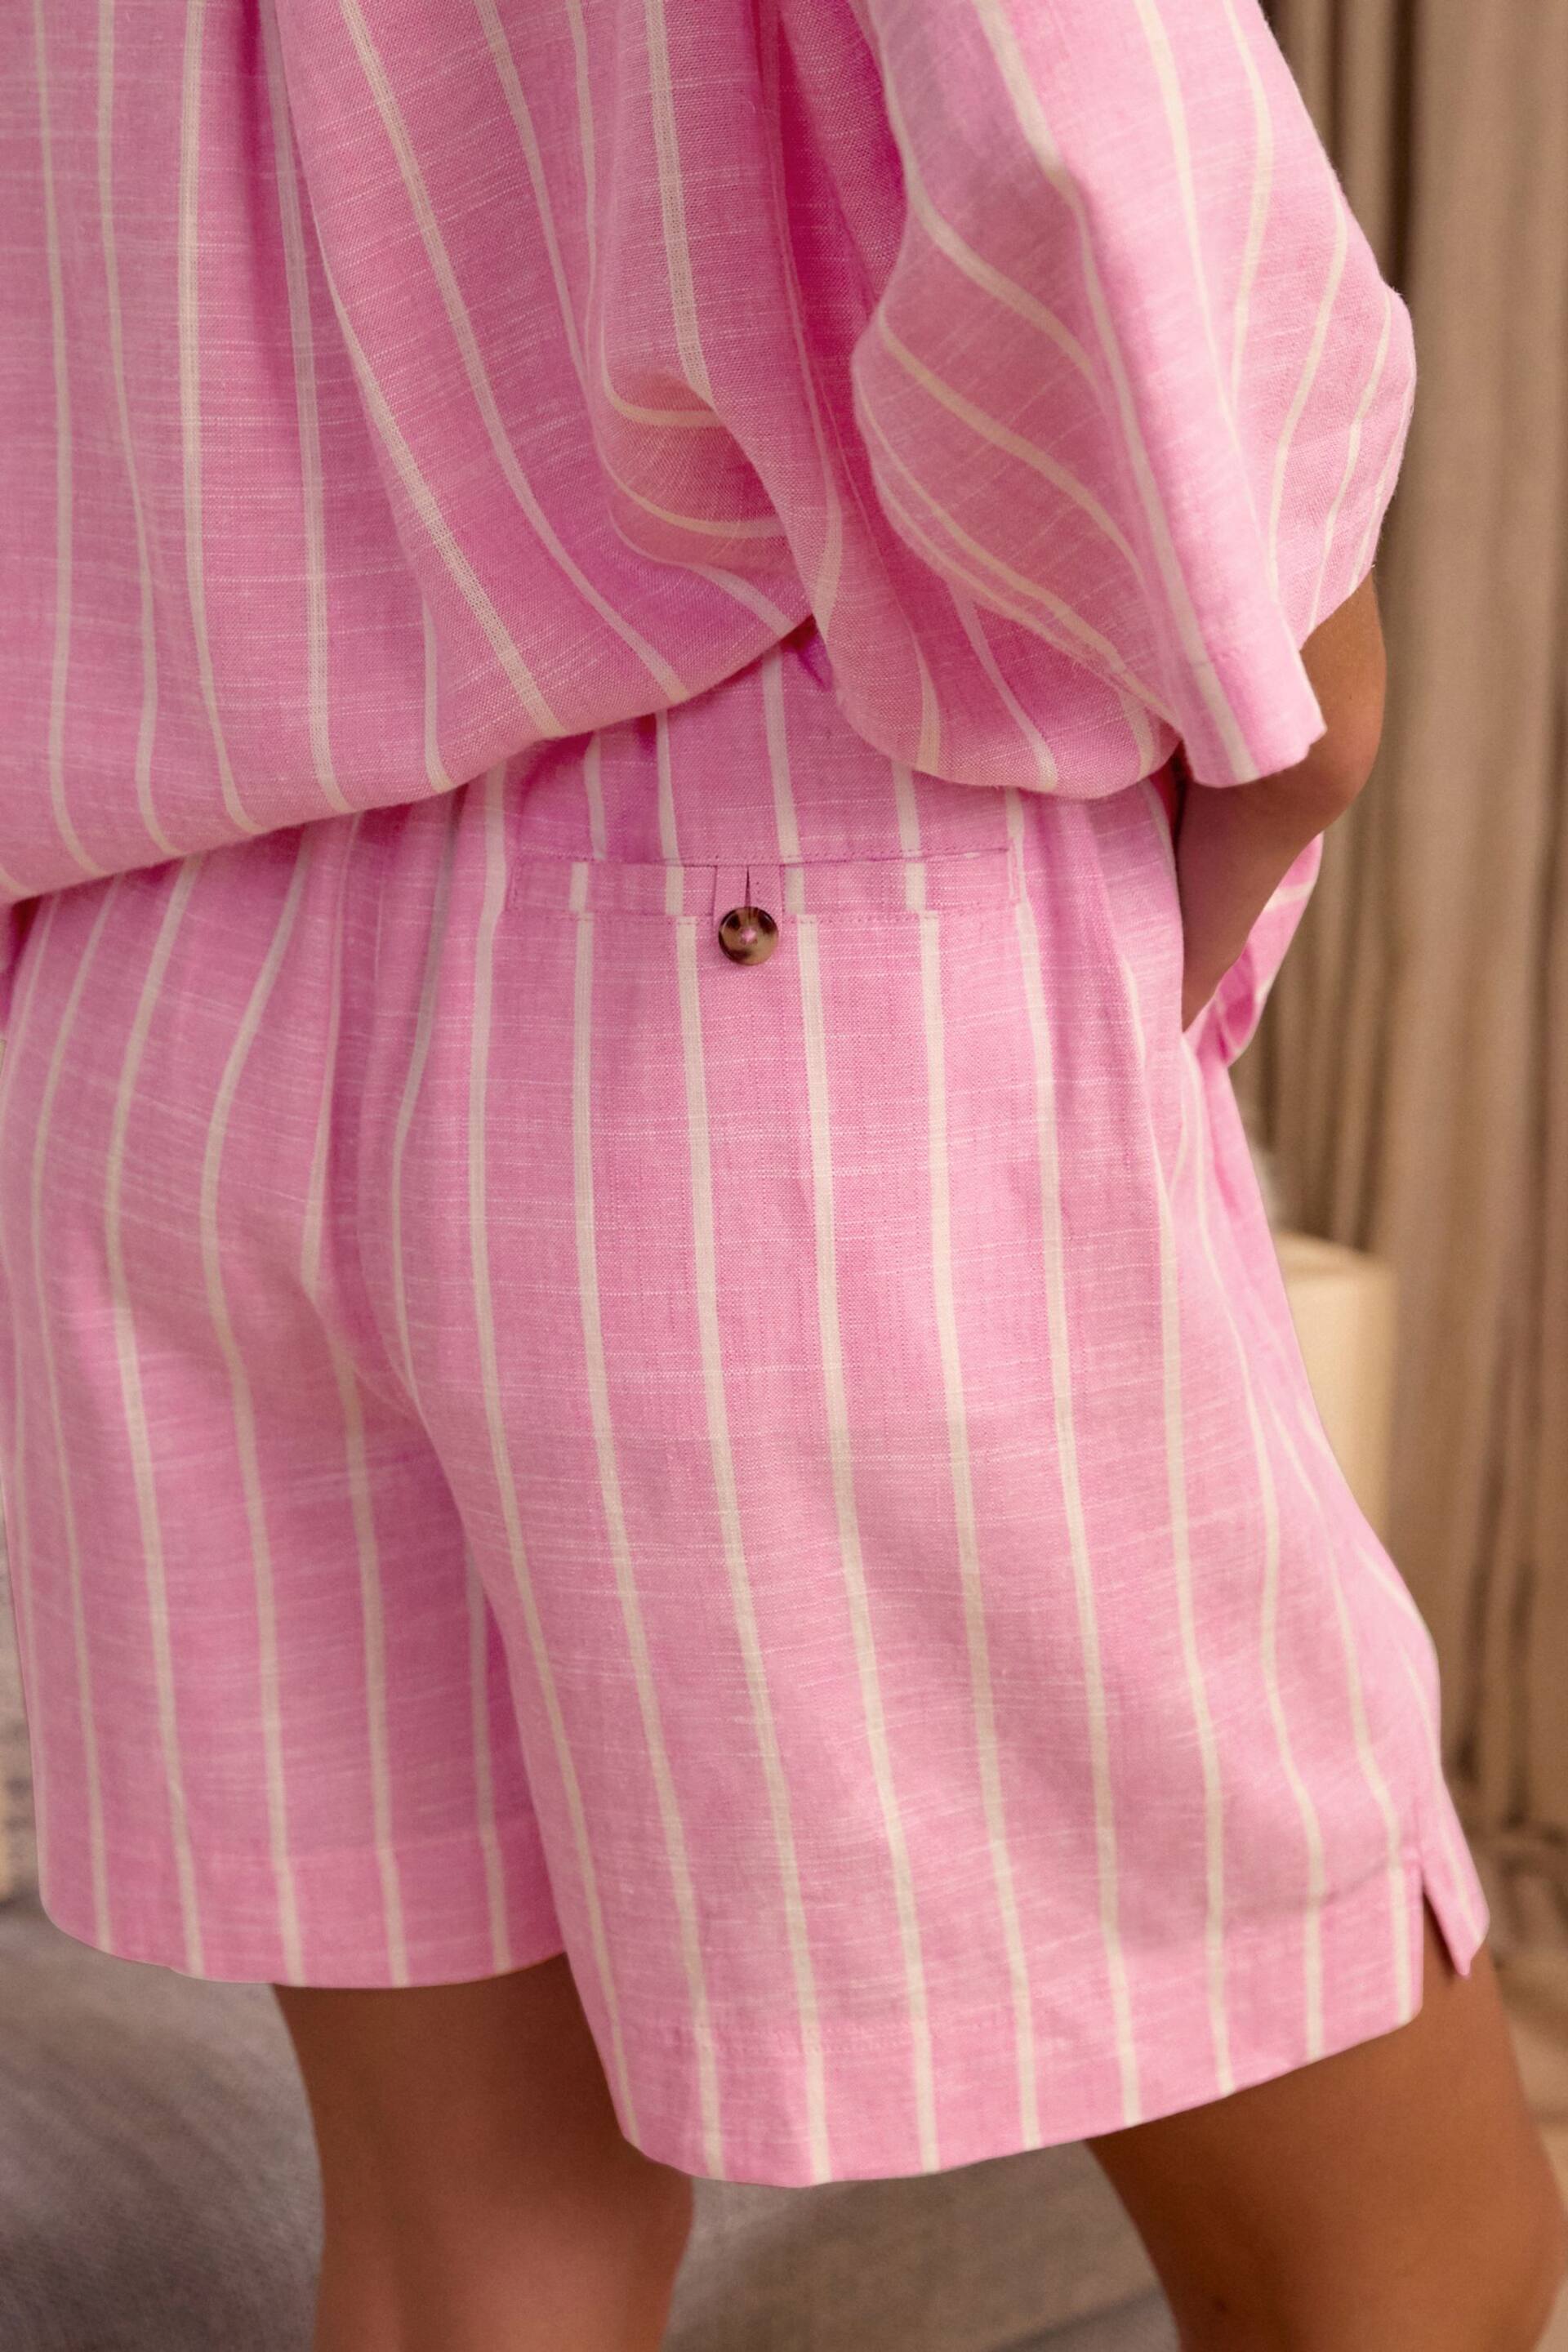 Pink Stripe Linen Blend Shorts - Image 4 of 5